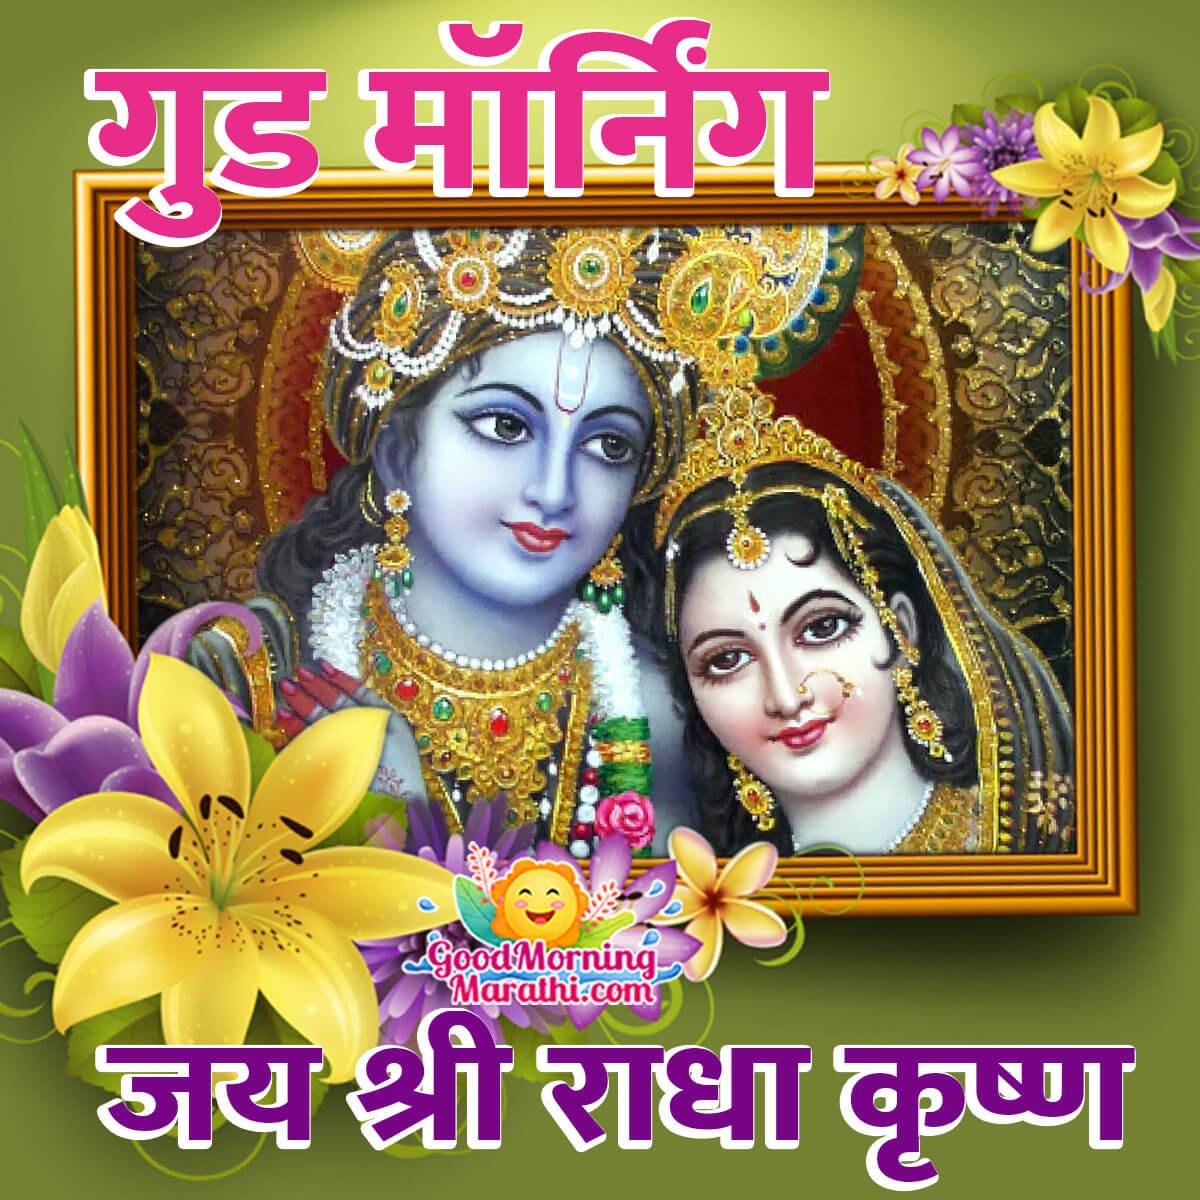 Good Morning Jai Shri Radha Krishna